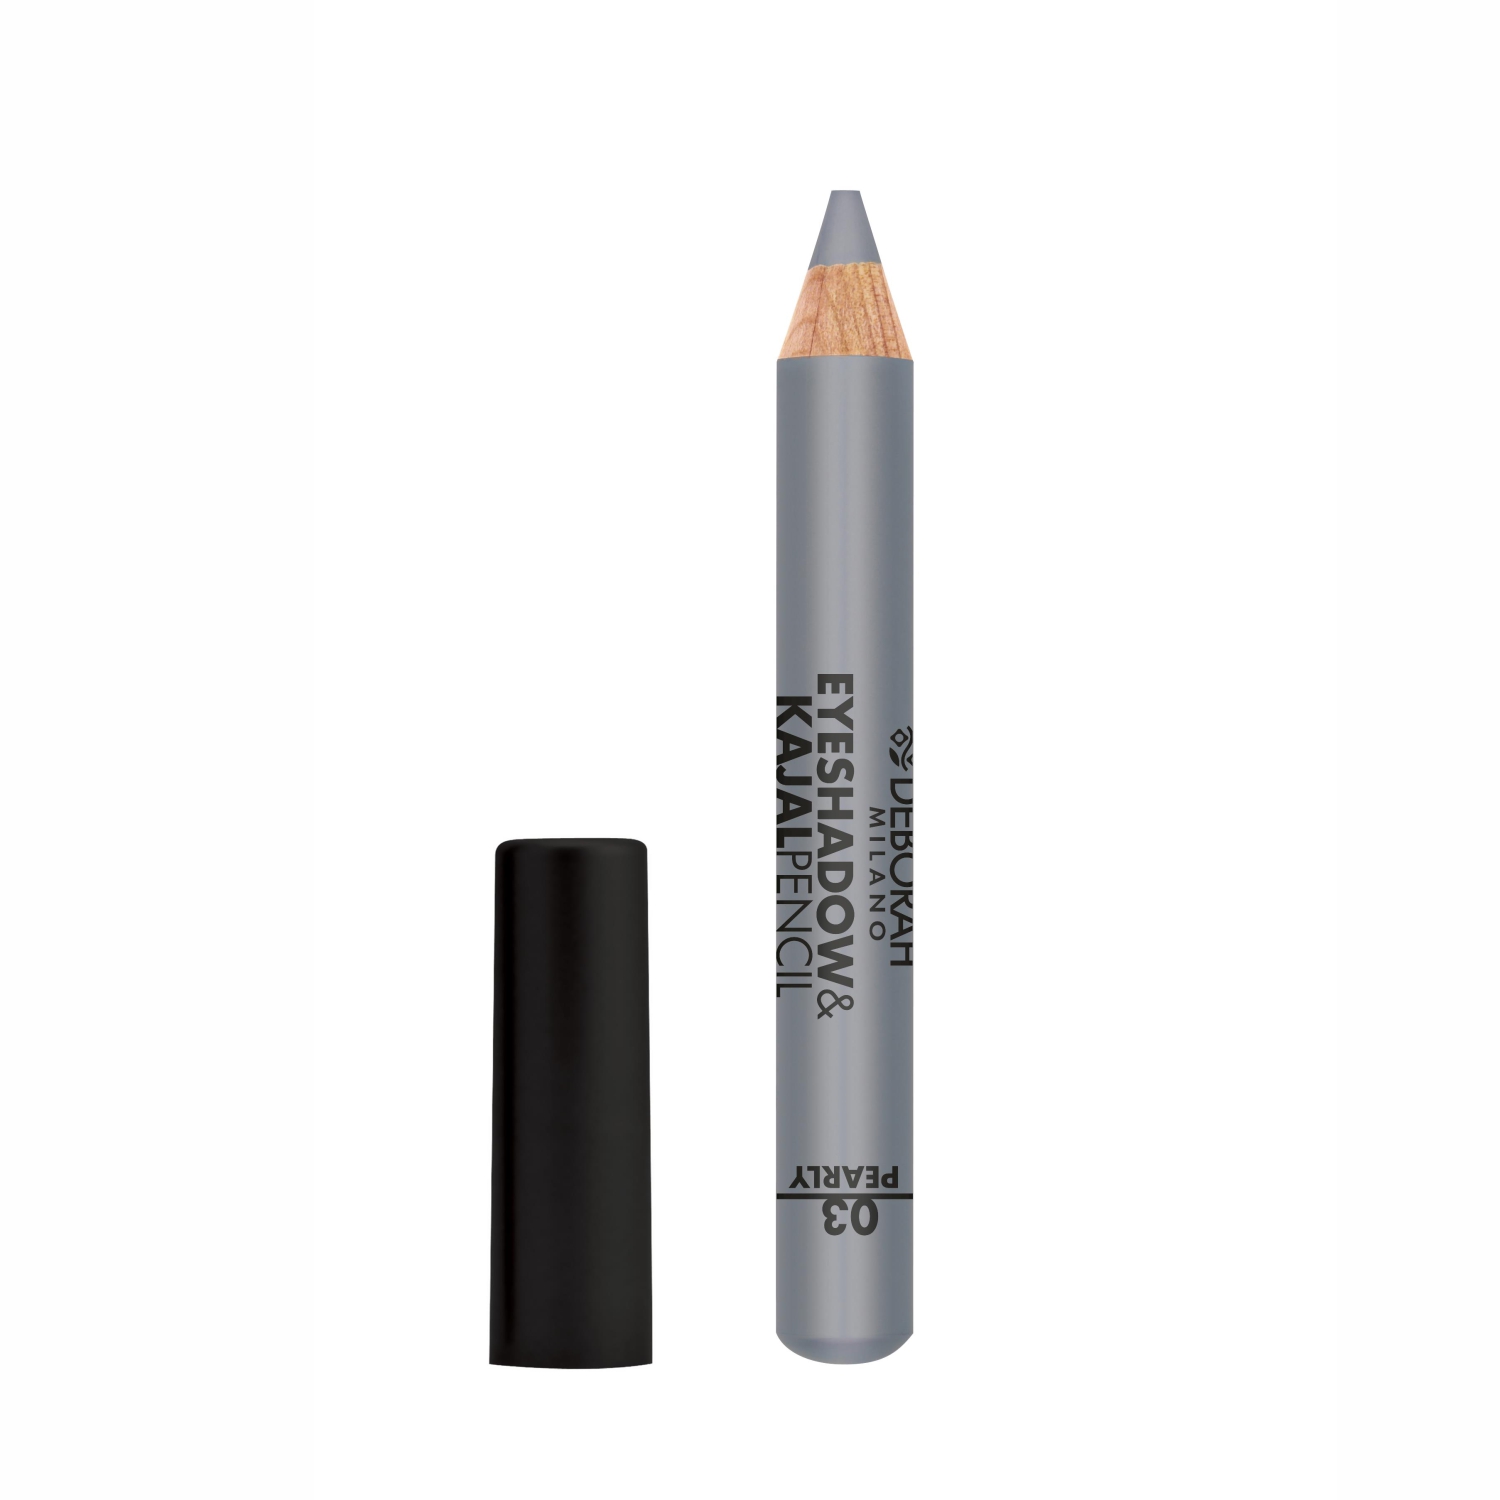 Deborah Milano Eyeshadow & Kajal Pencil , 2gm-03 Pearly Silver